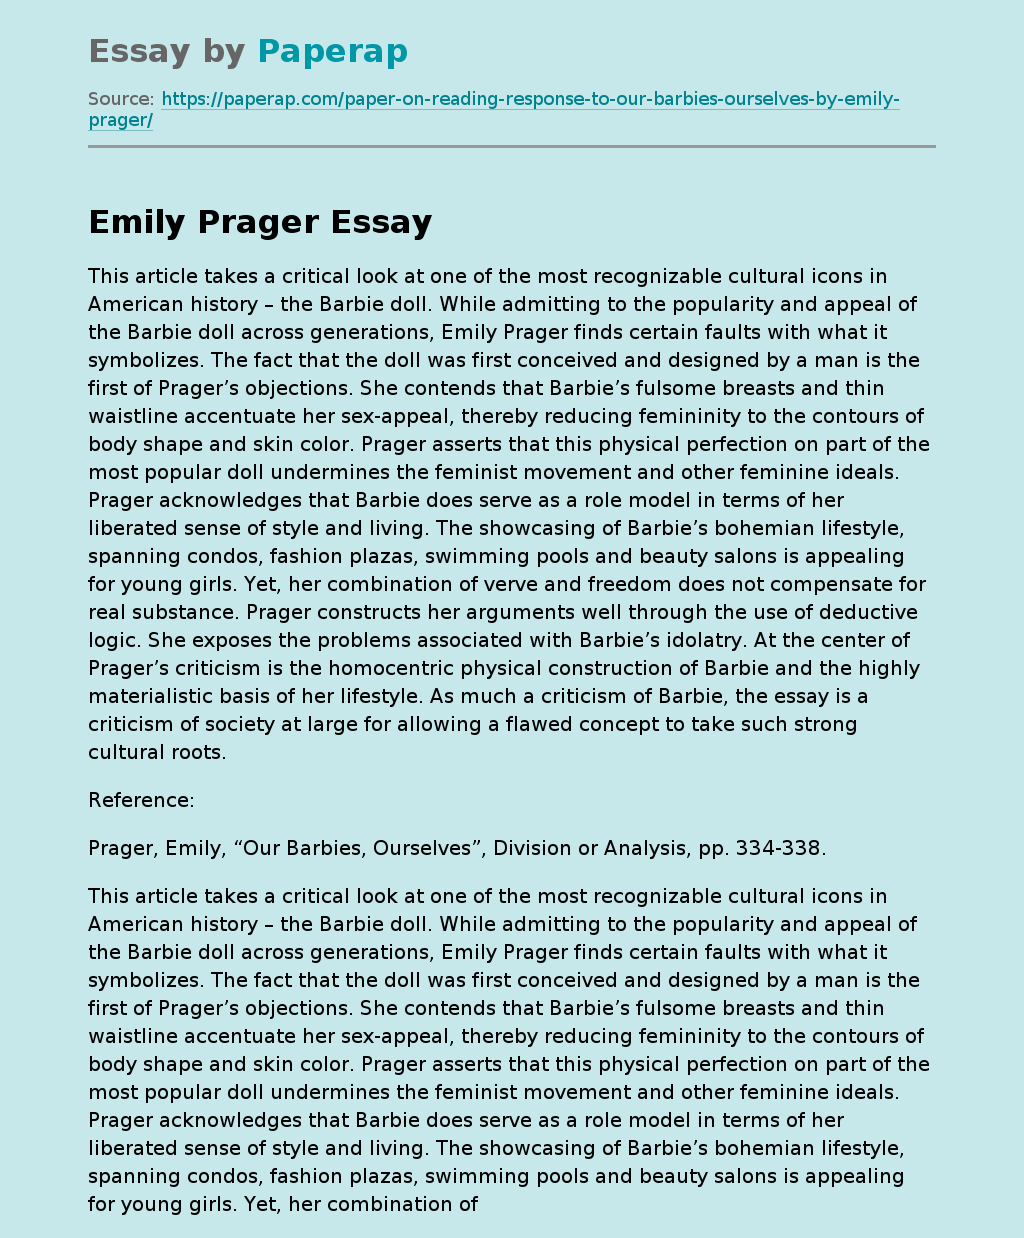 Emily Prager